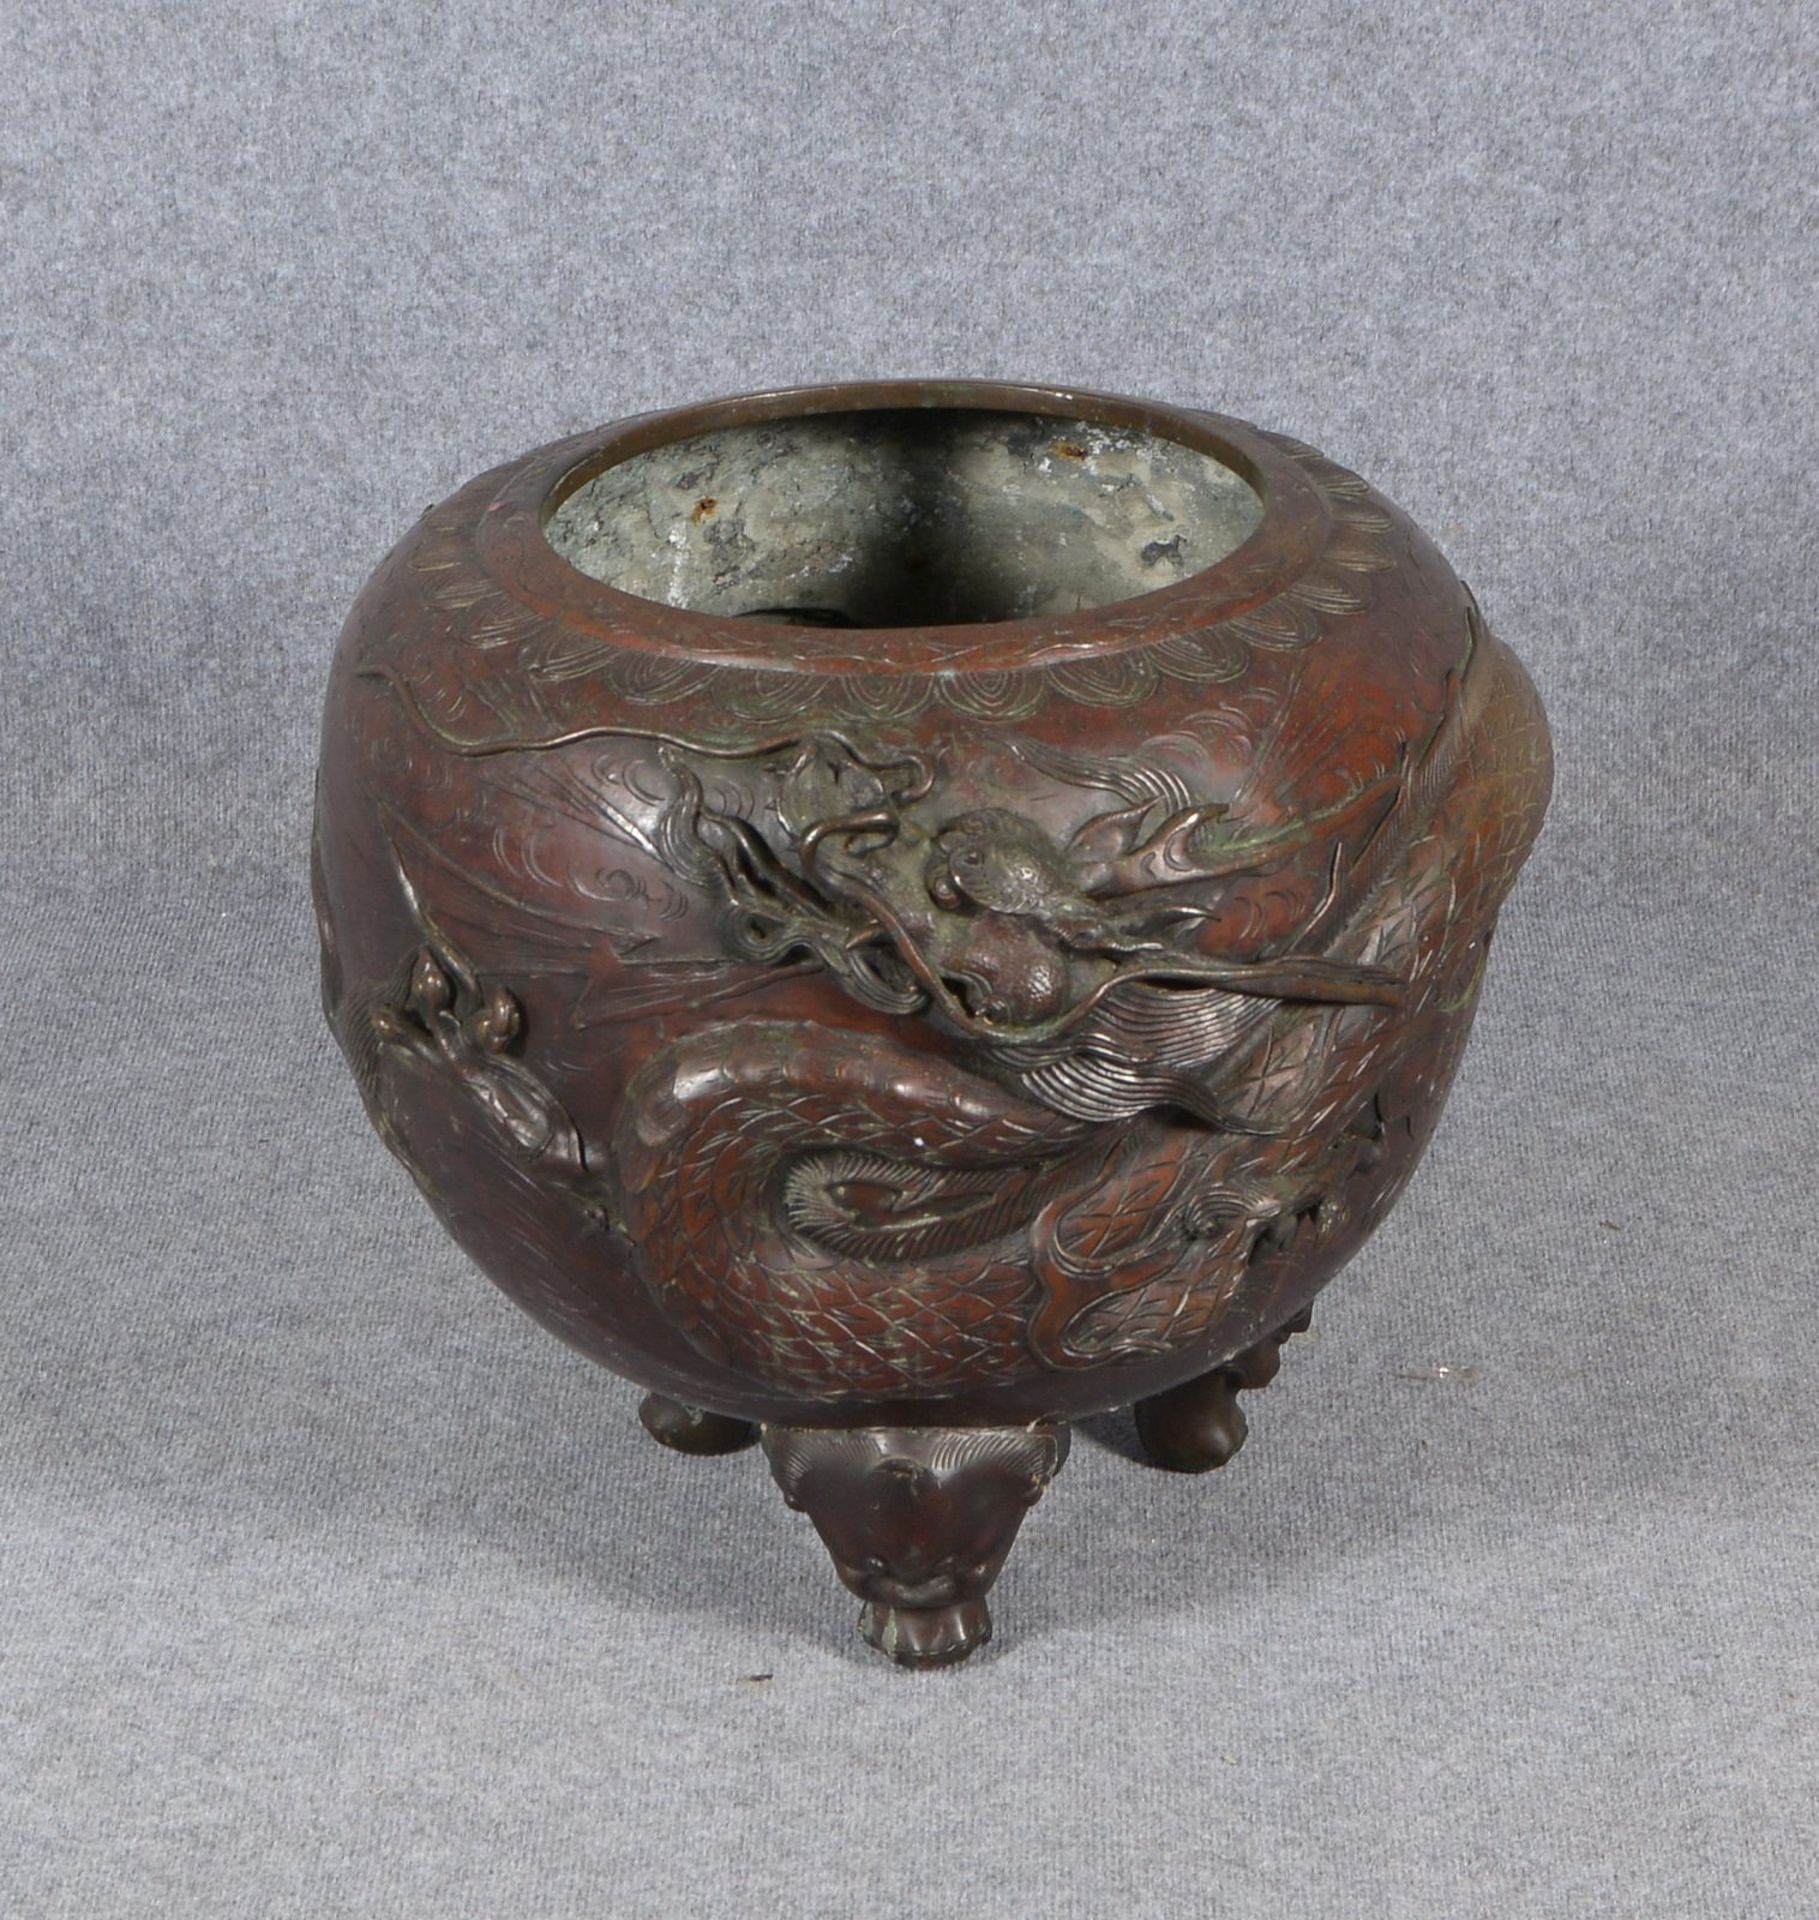 Gr. Fishbowl, Metallguss pat., mit starkem Drachen-Reliefdekor, auf 3x figürl. Füßen